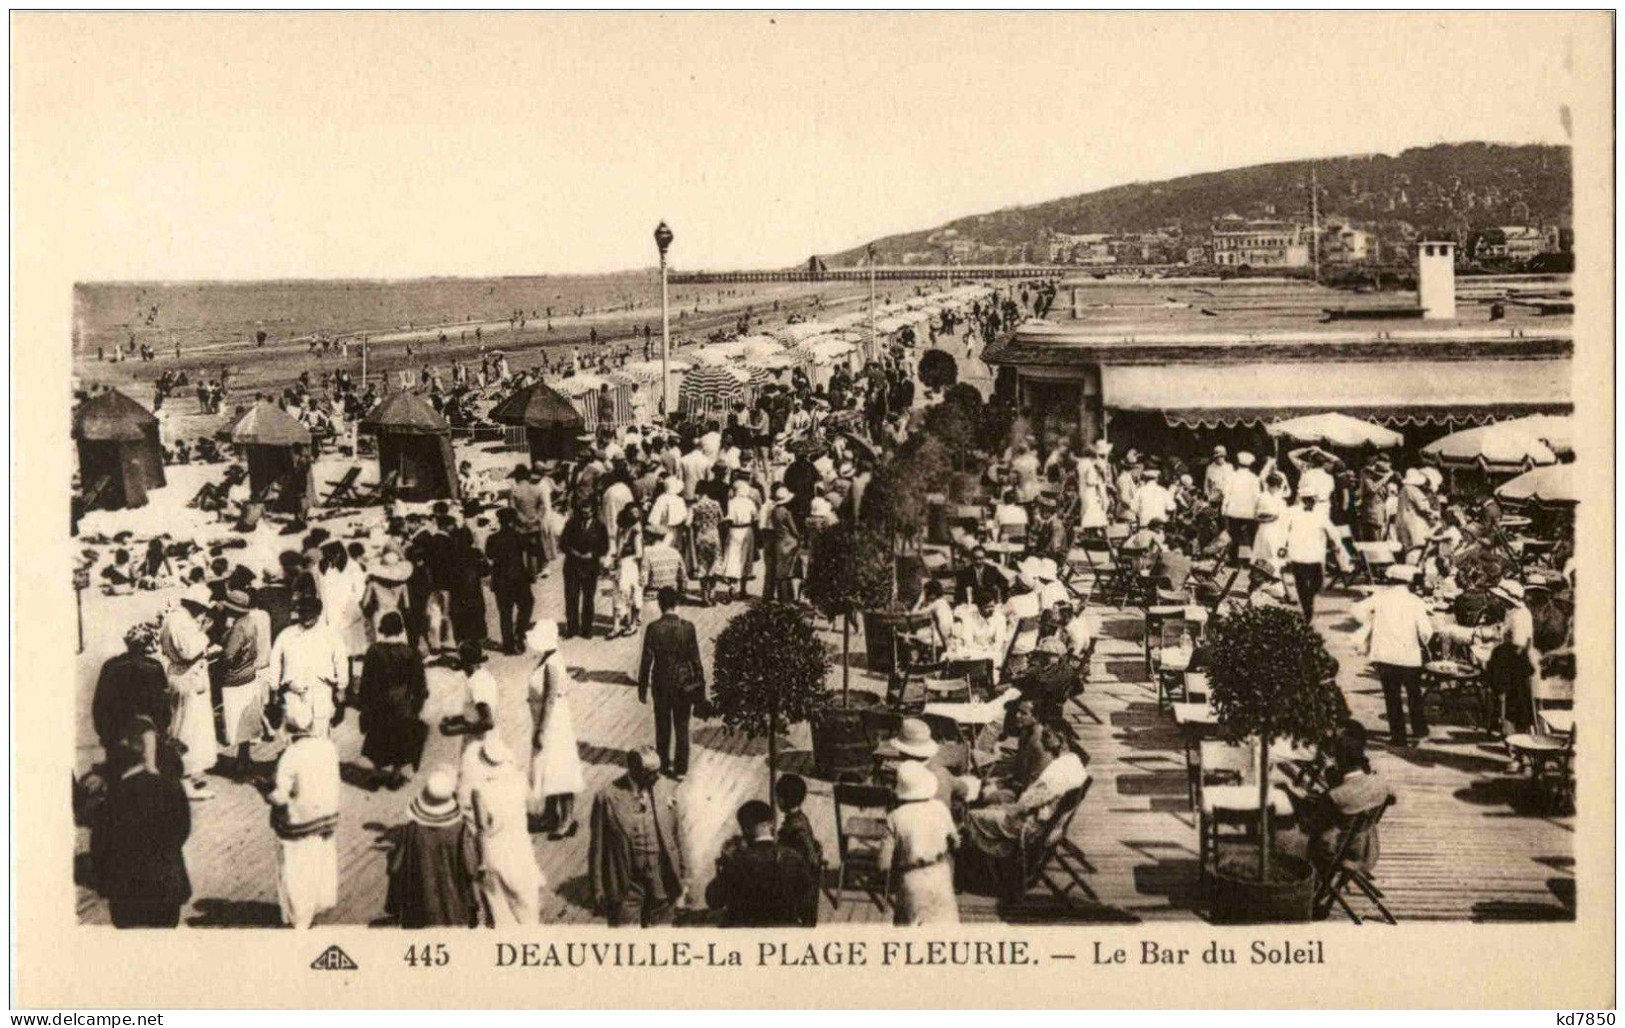 Deauville - Deauville